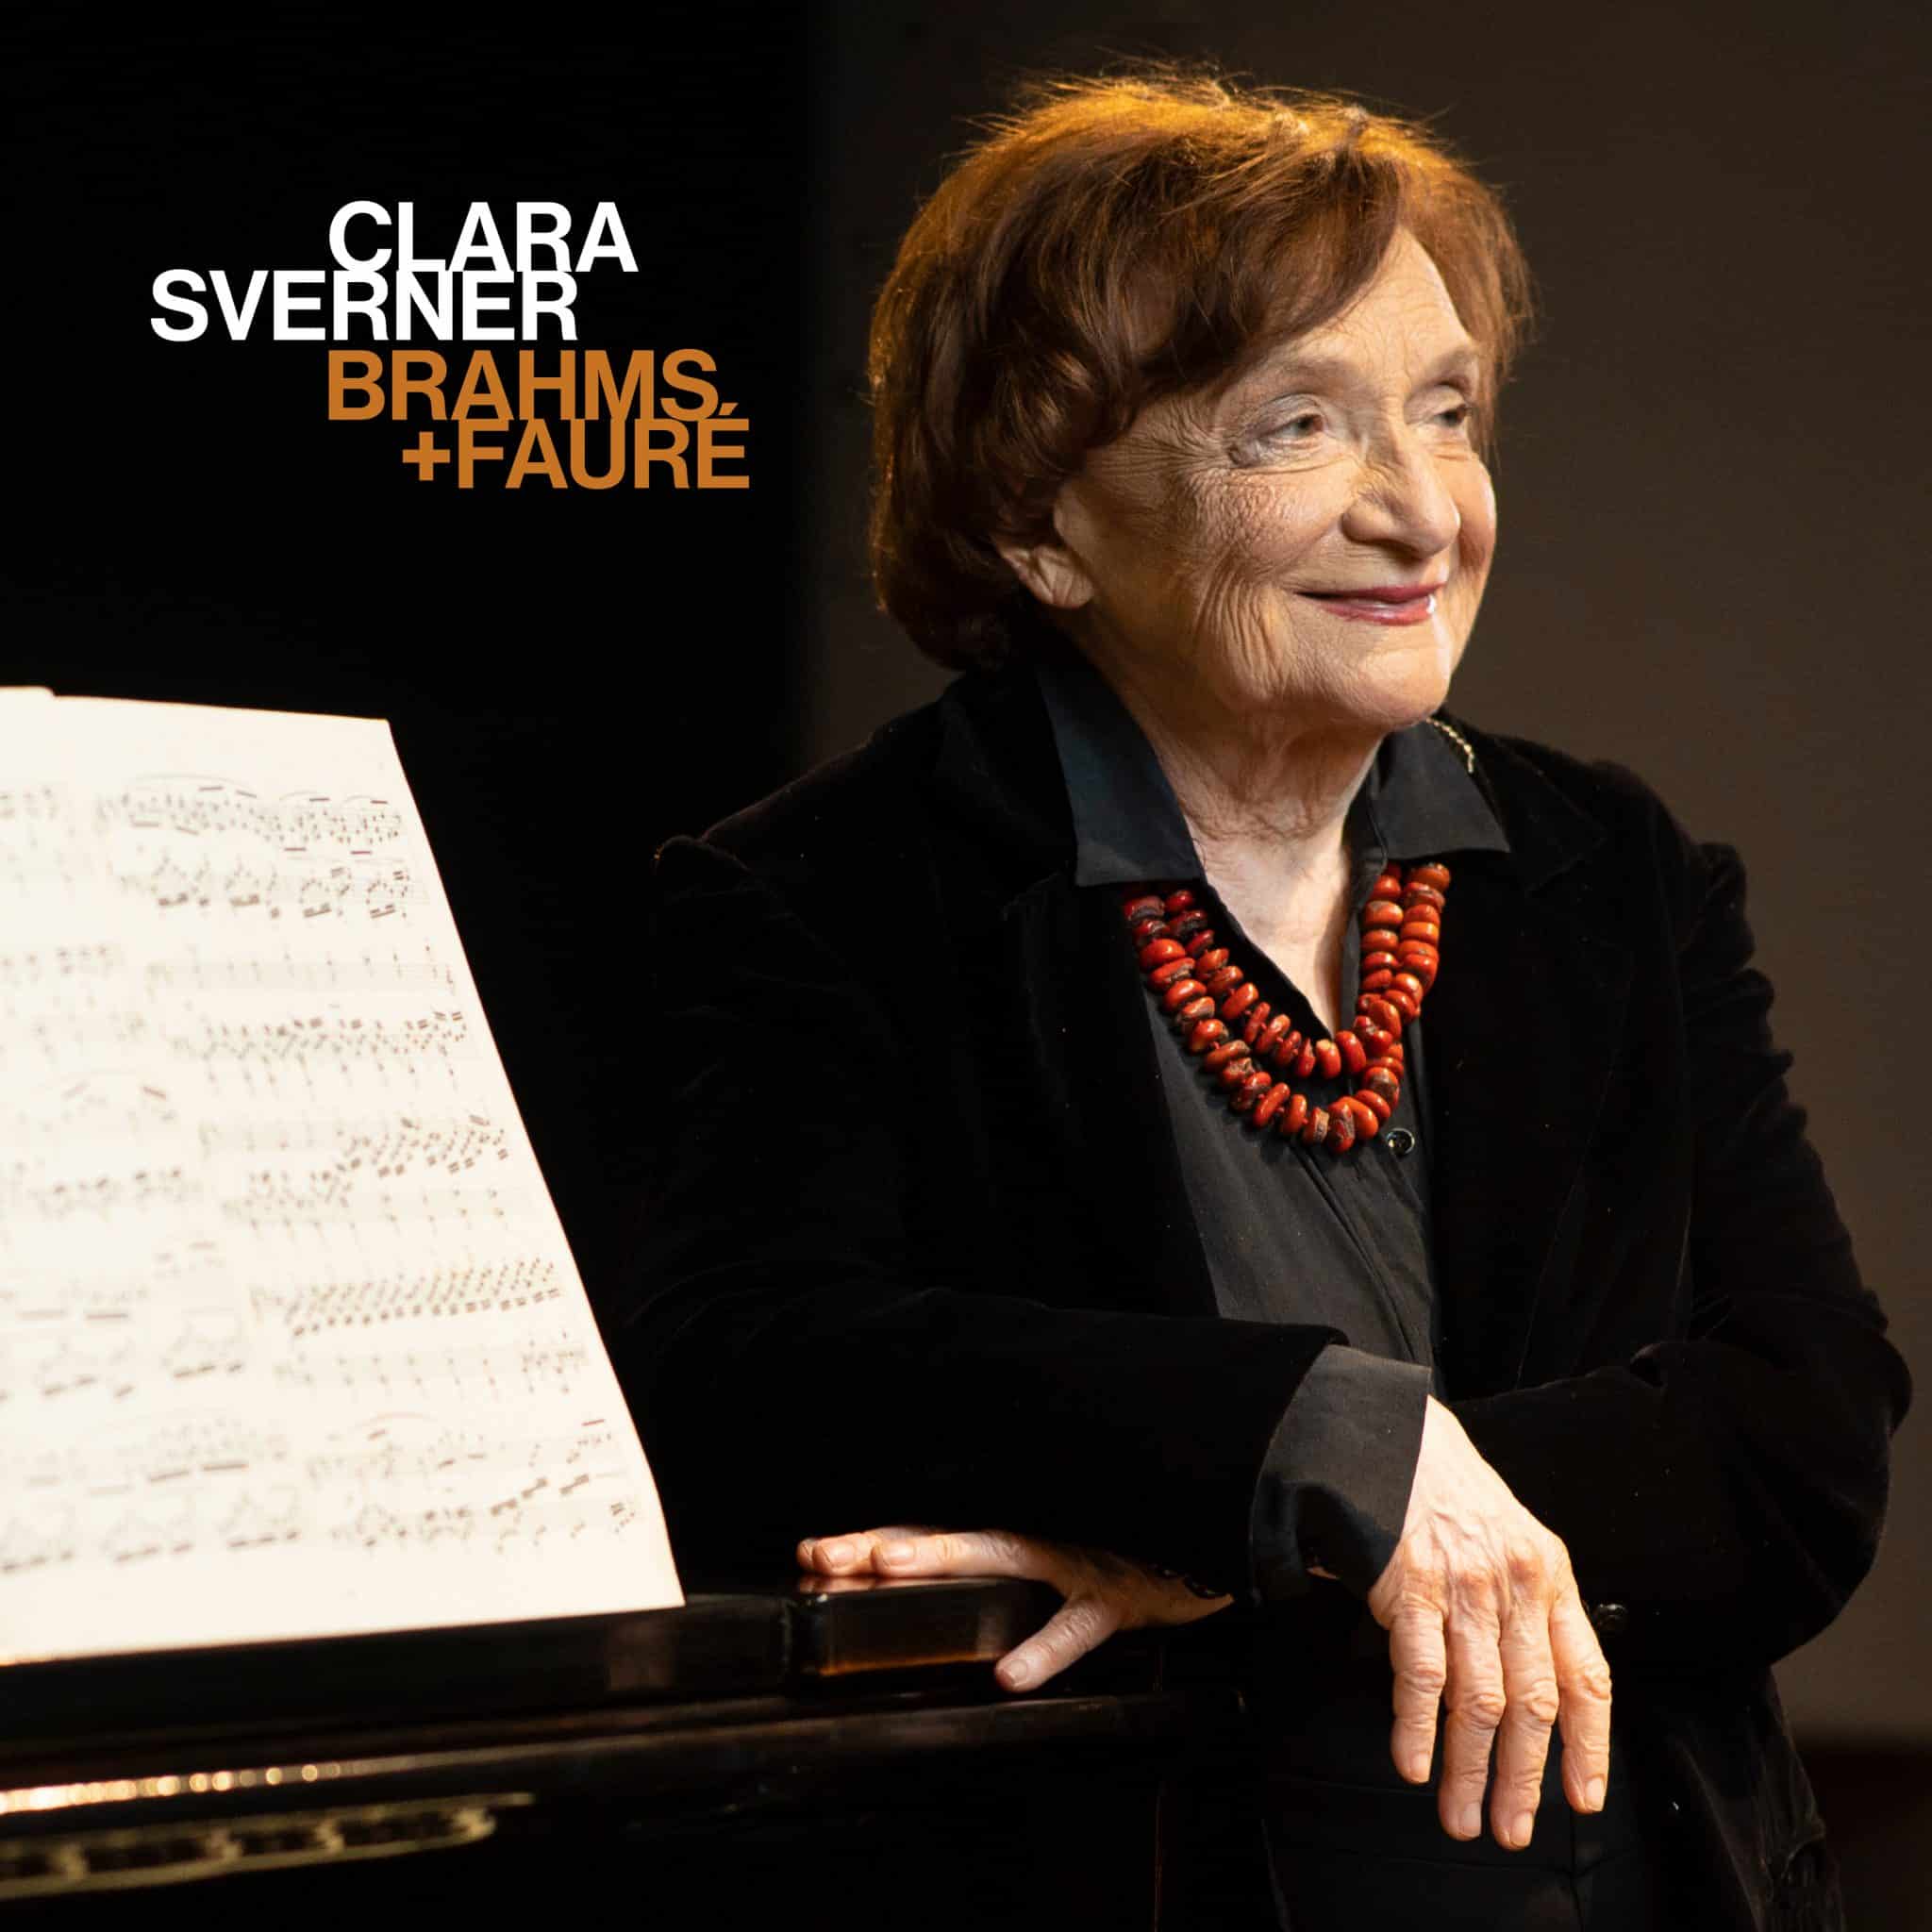 revistaprosaversoearte.com - Clara Sverner apresenta seu novo álbum 'Brahms + Fauré'